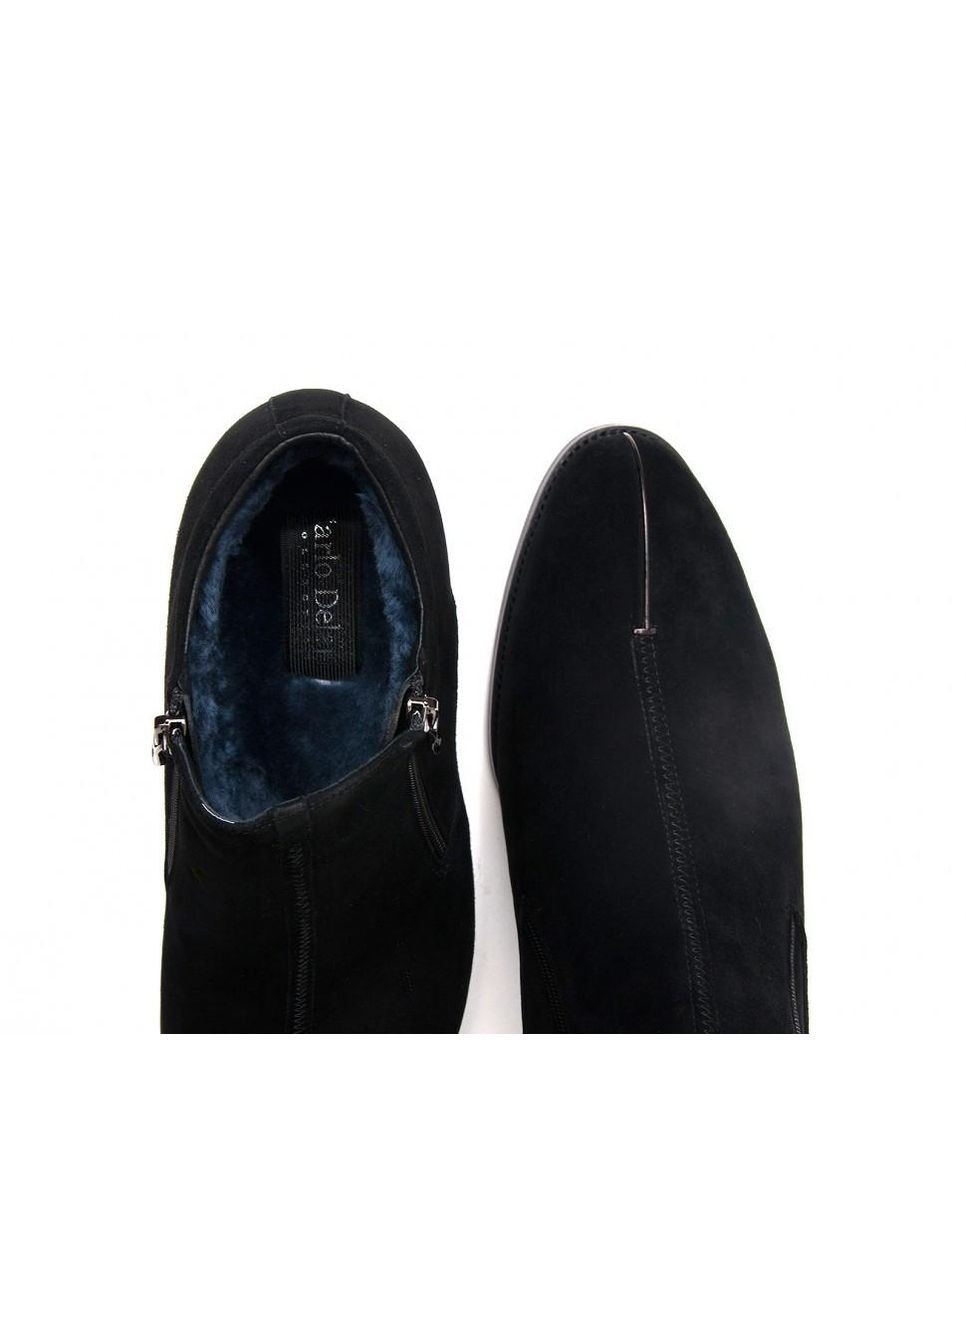 Черные зимние ботинки 7134264 38 цвет черный Carlo Delari